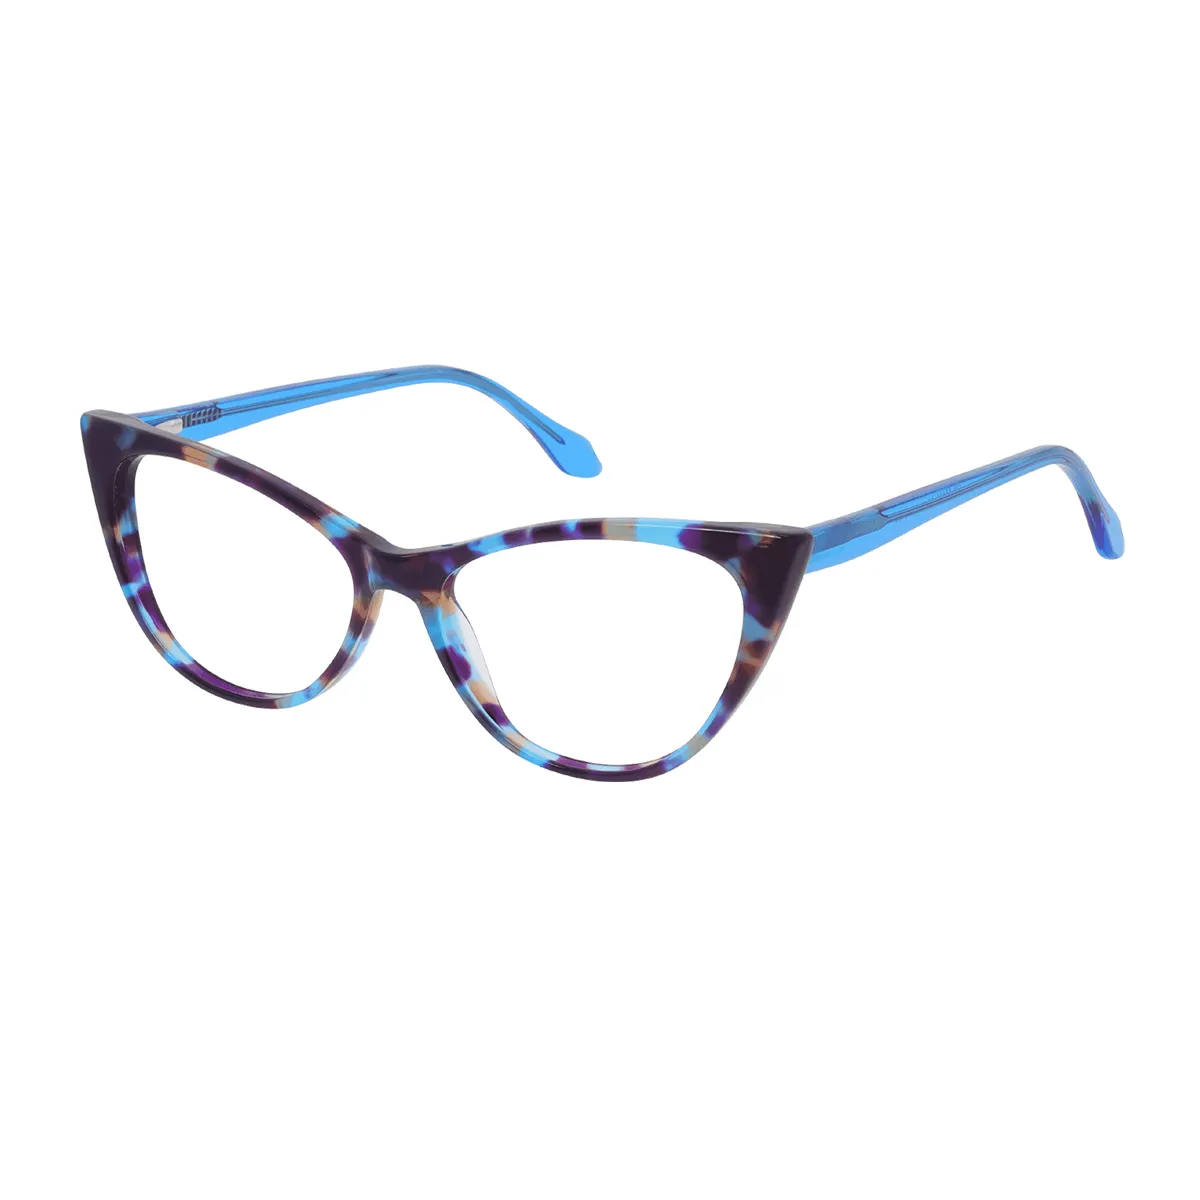 Angelica - Cat-eye  Glasses for Women